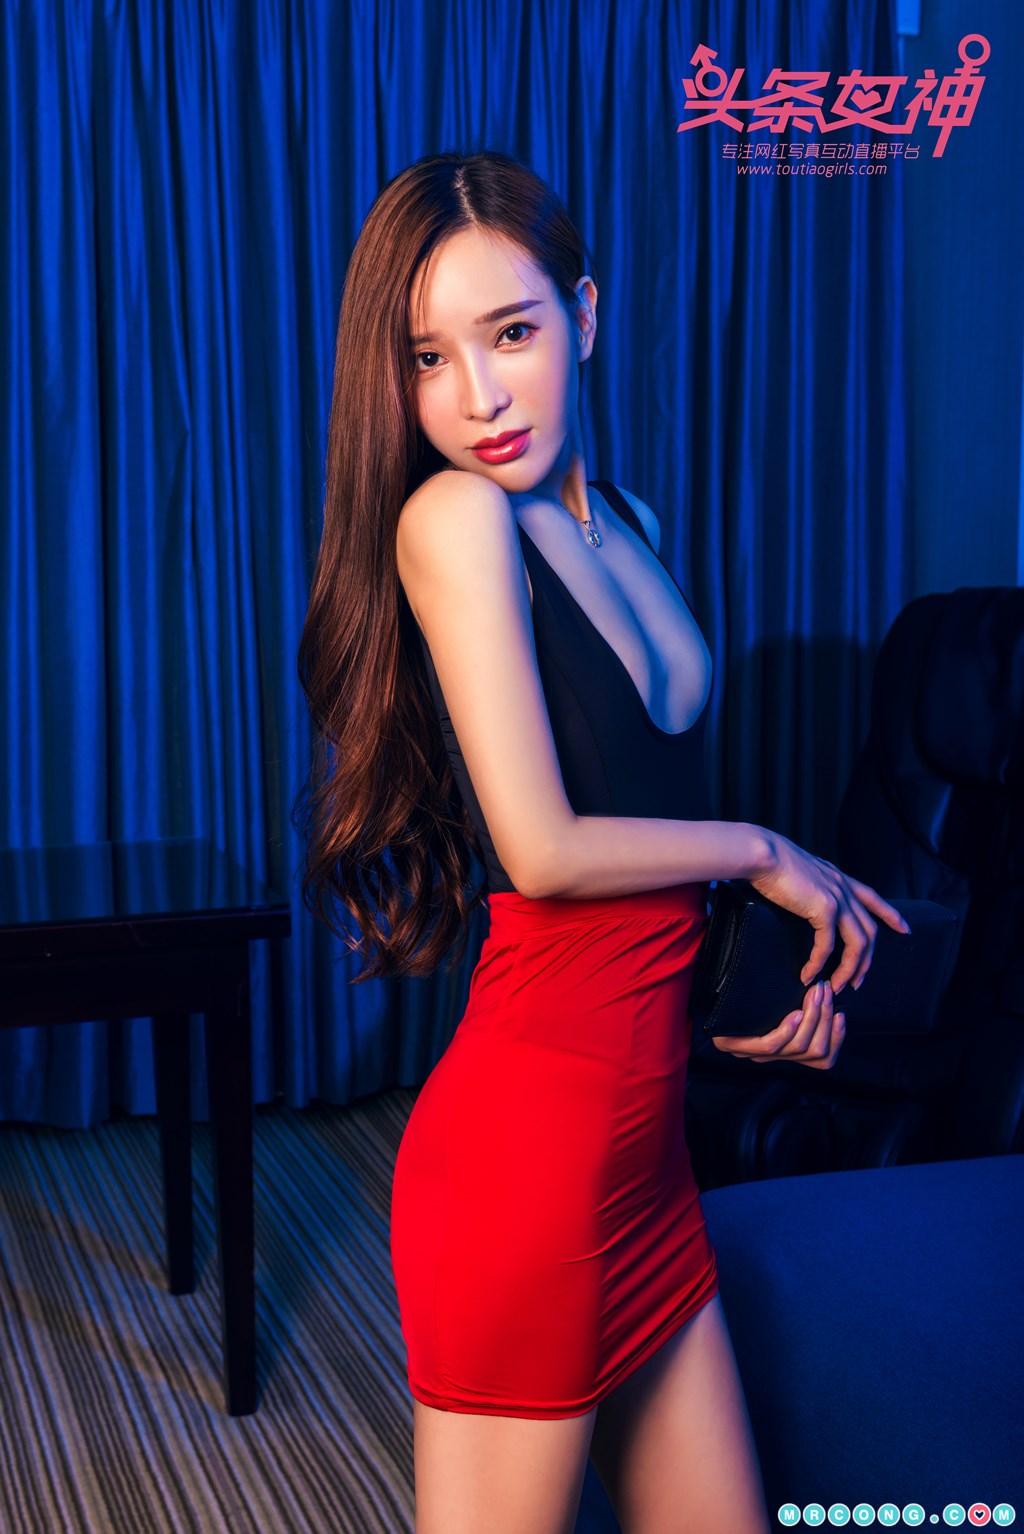 TouTiao 2017-12-16: Model Ai Xiao Qing (艾小青) (32 photos) photo 1-2